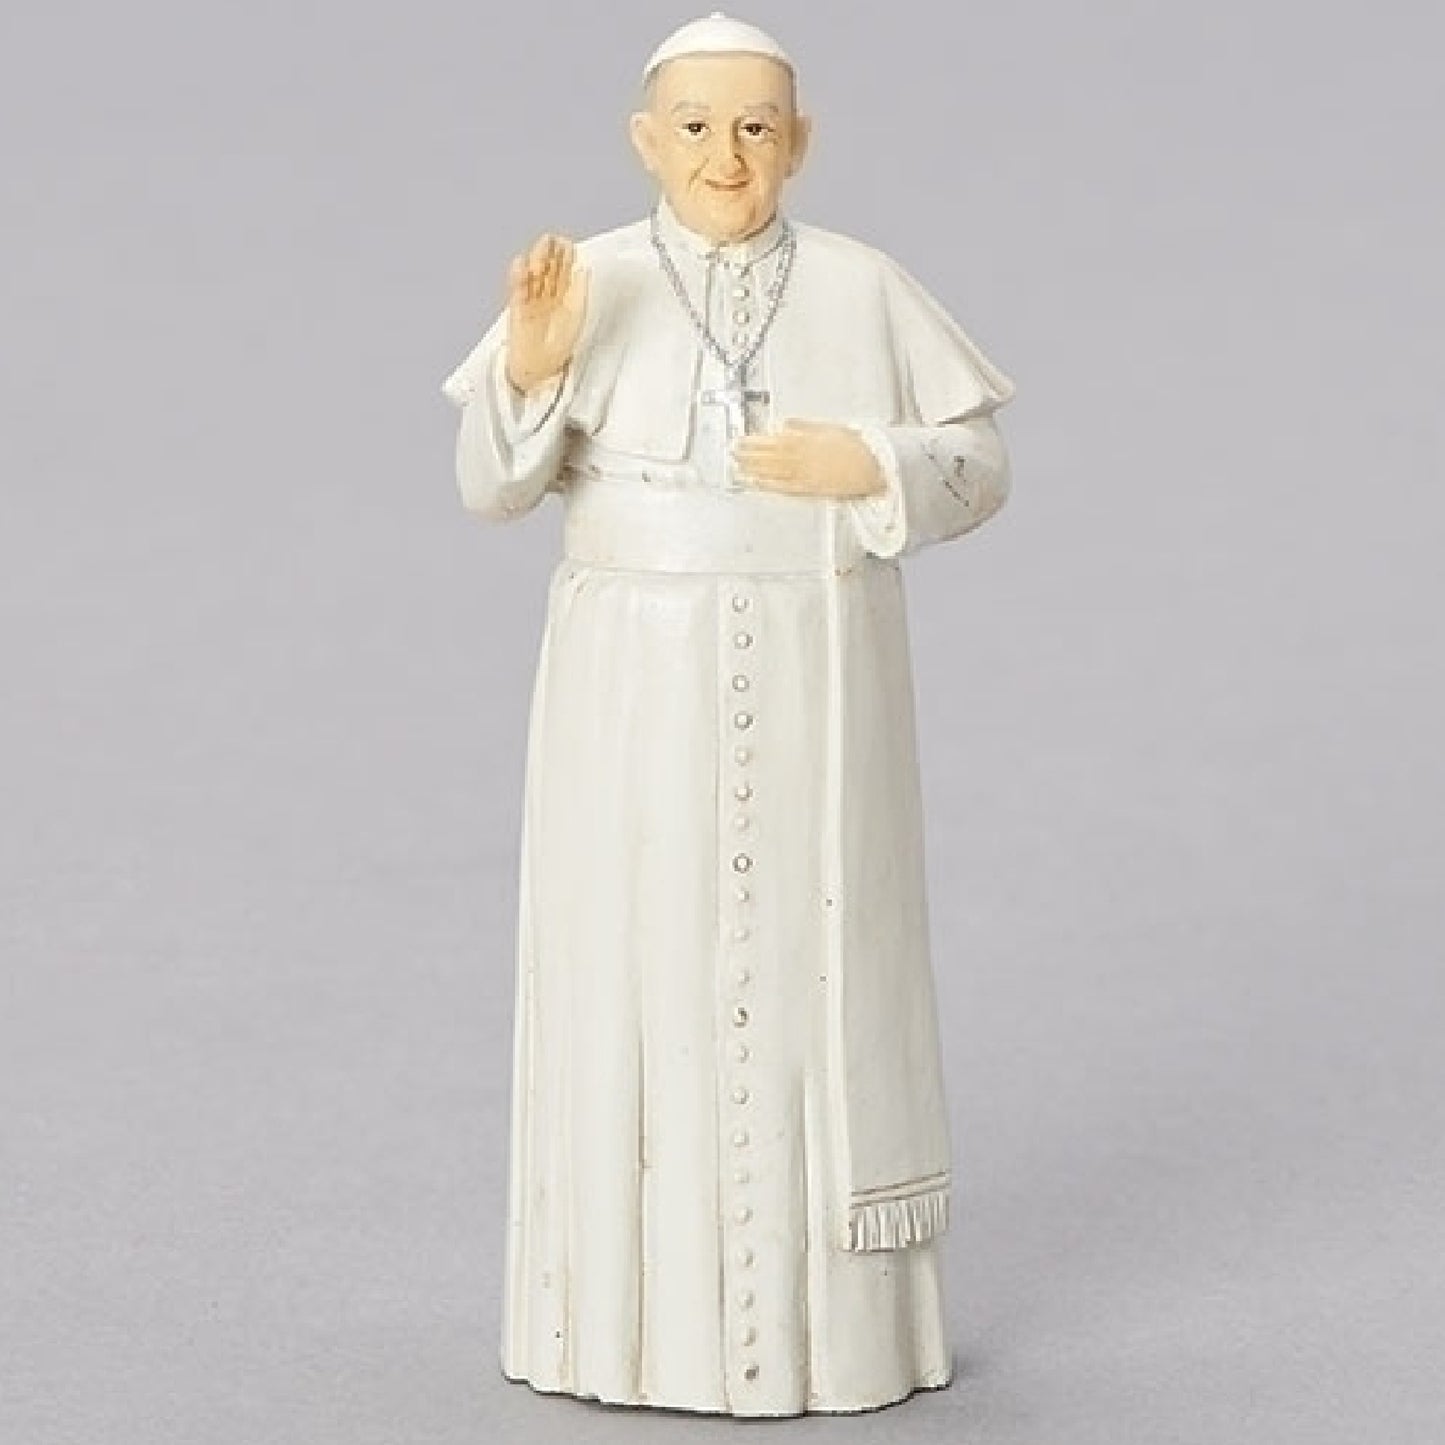 Figurine du pape romain François, le pape du peuple